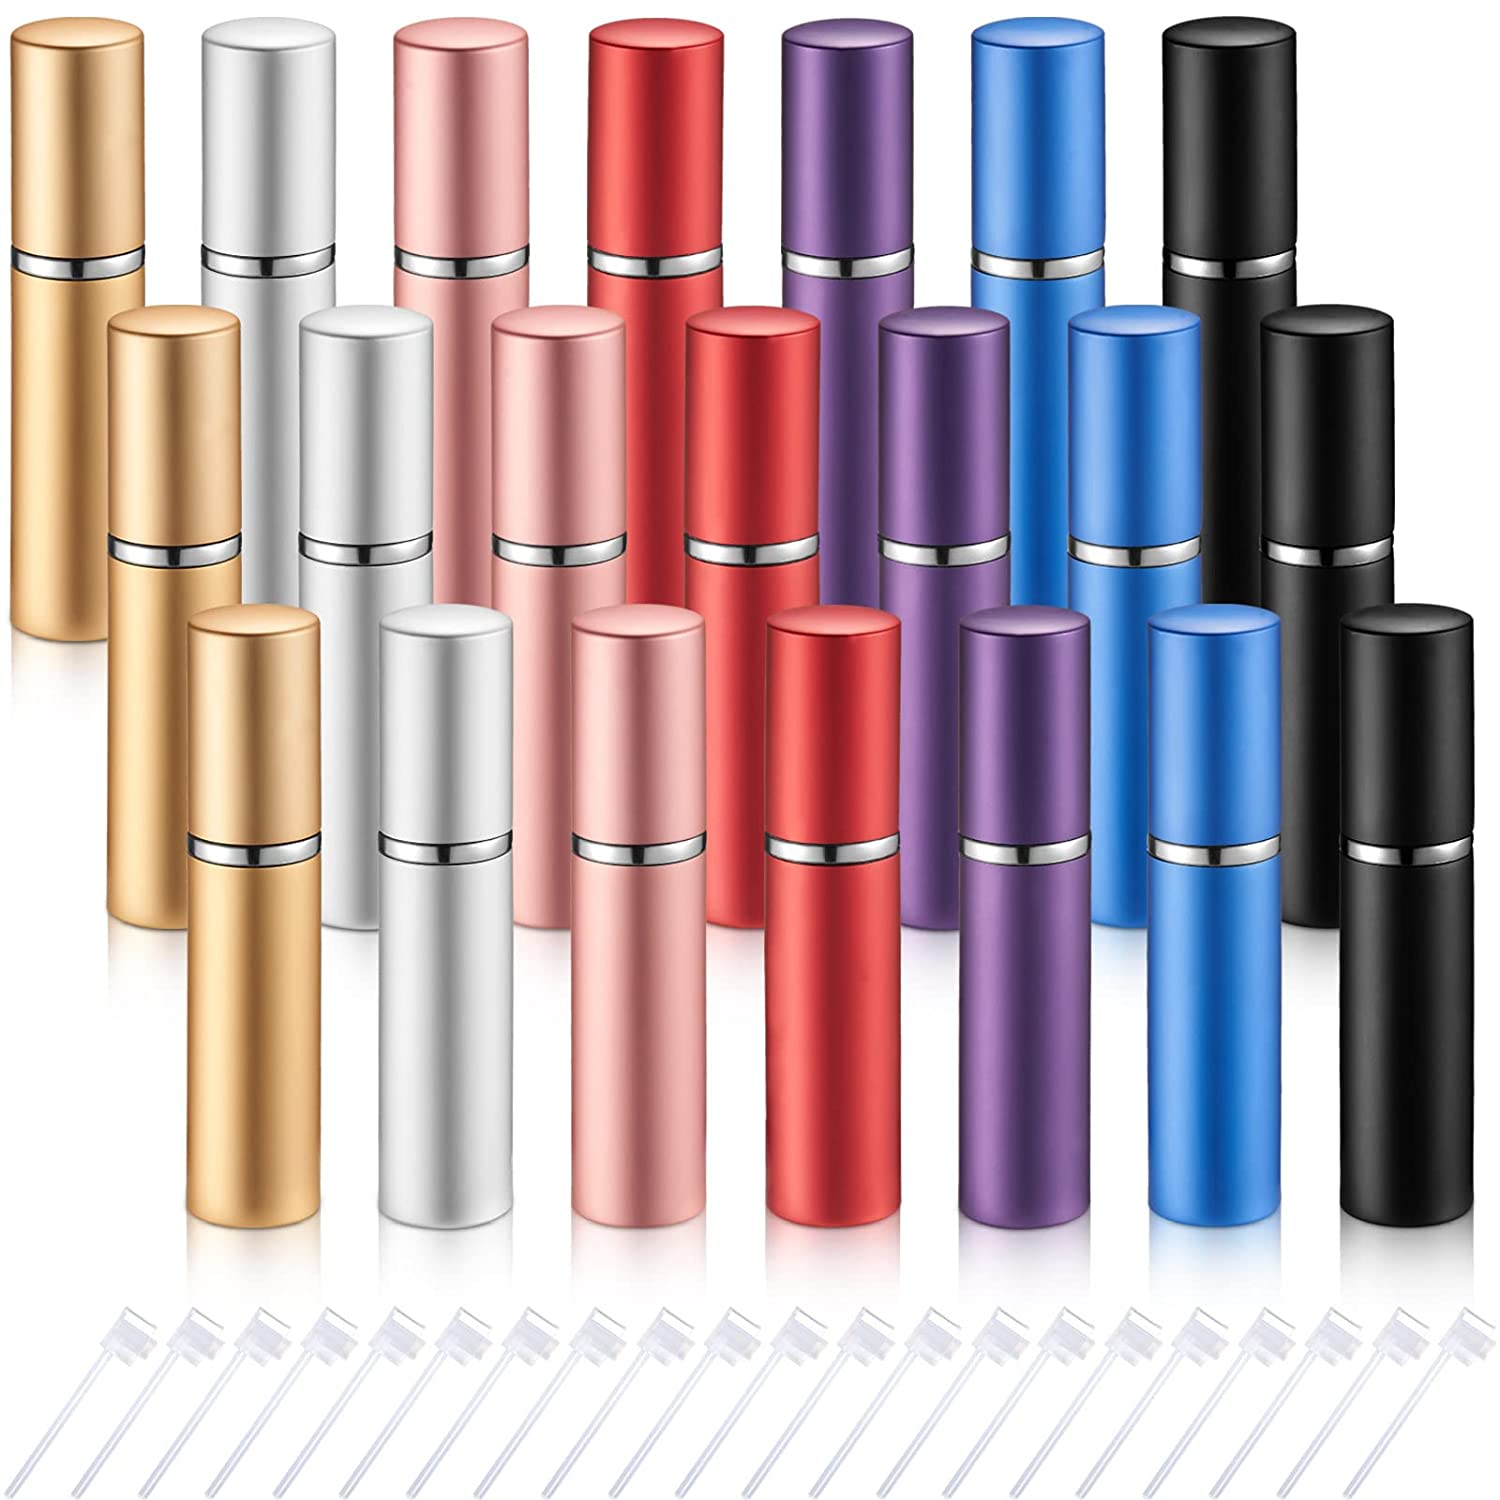 Vonovo Portable Mini Refillable Perfume Atomizer Bottle Atomizer Travel Size Spray Bottles Accessories 5 Sets of 5ml/0.2oz